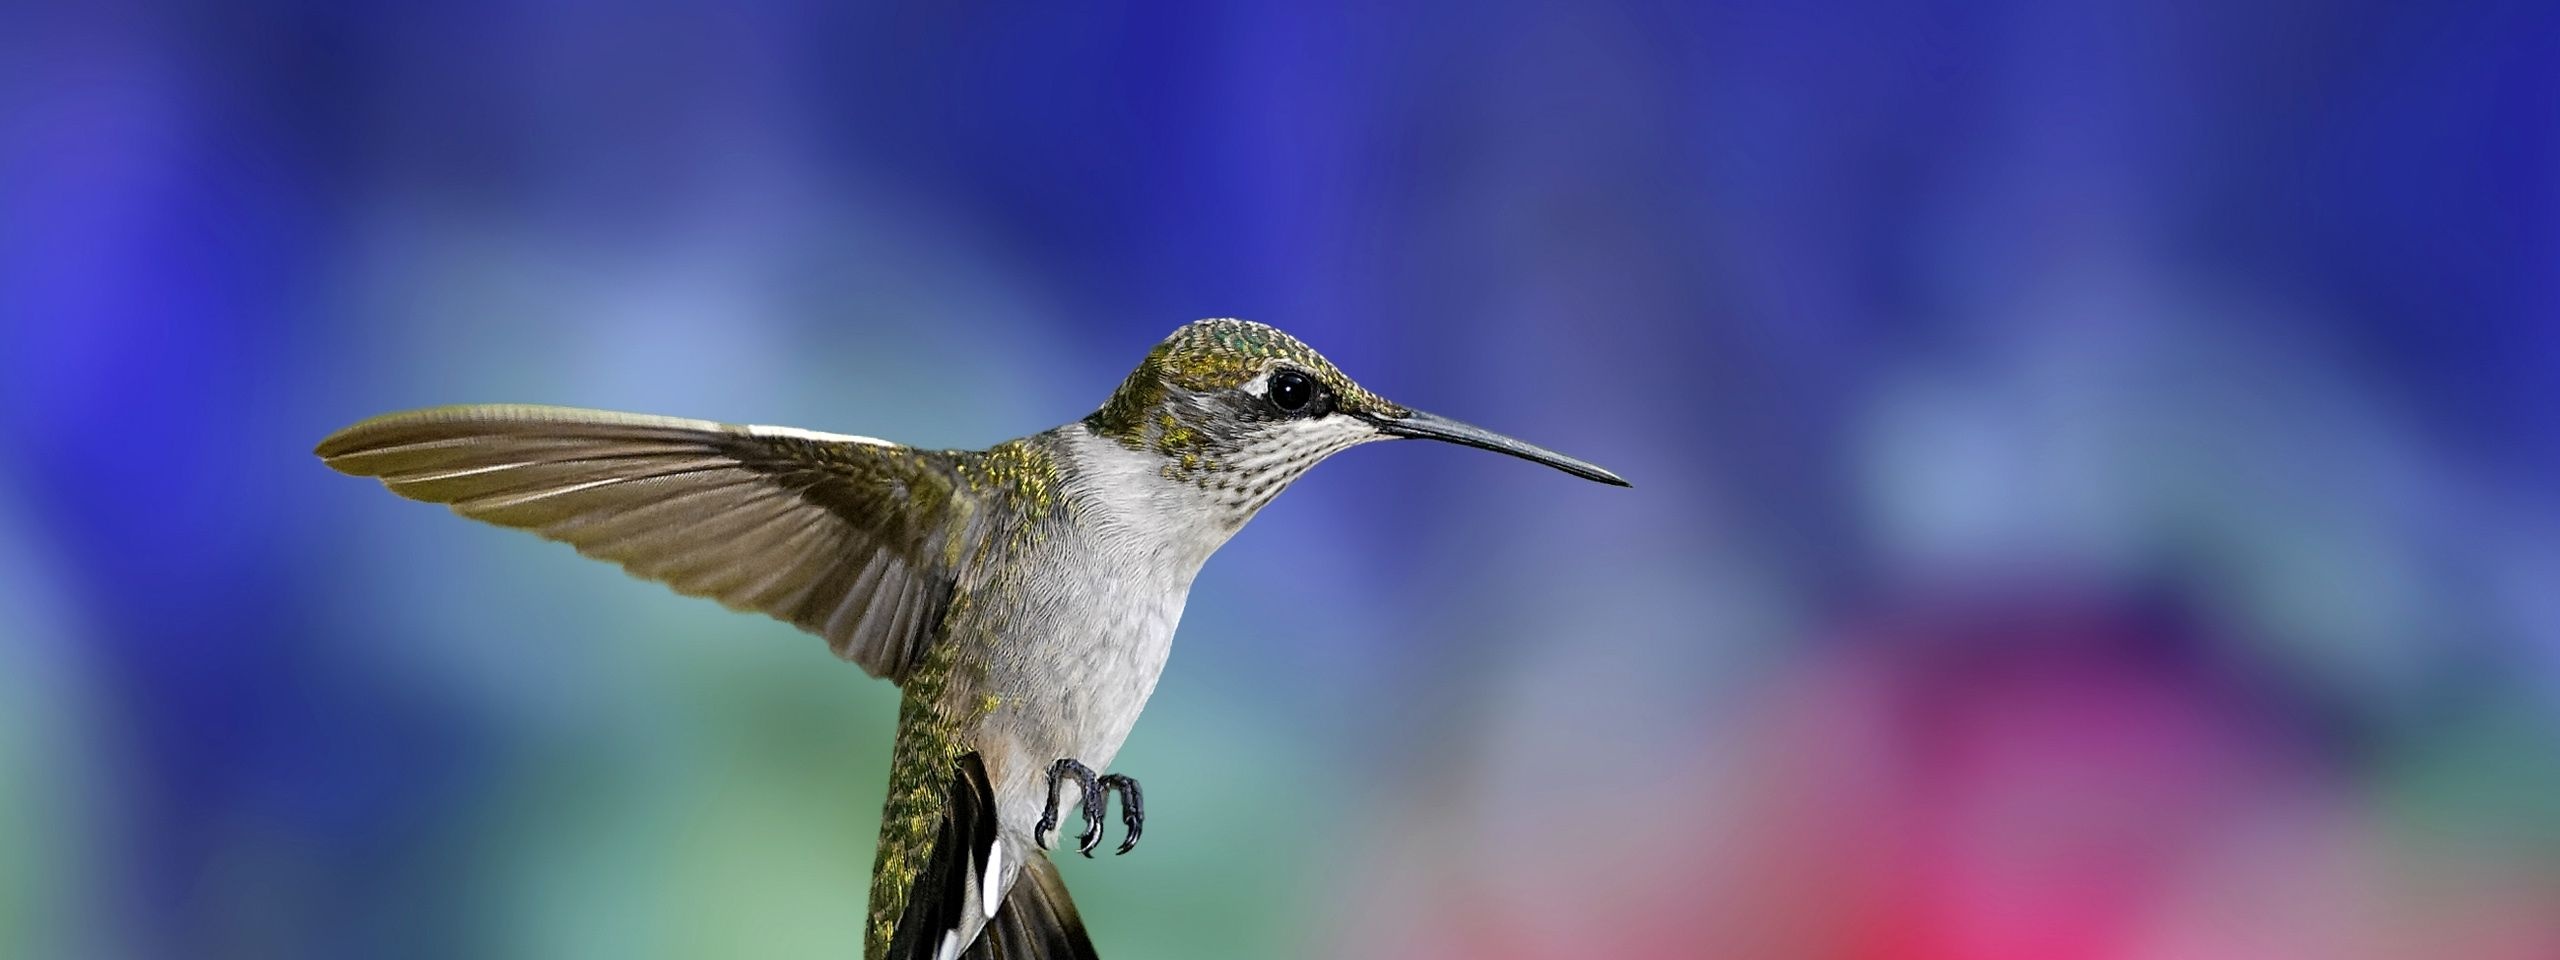 Colibri Bird1